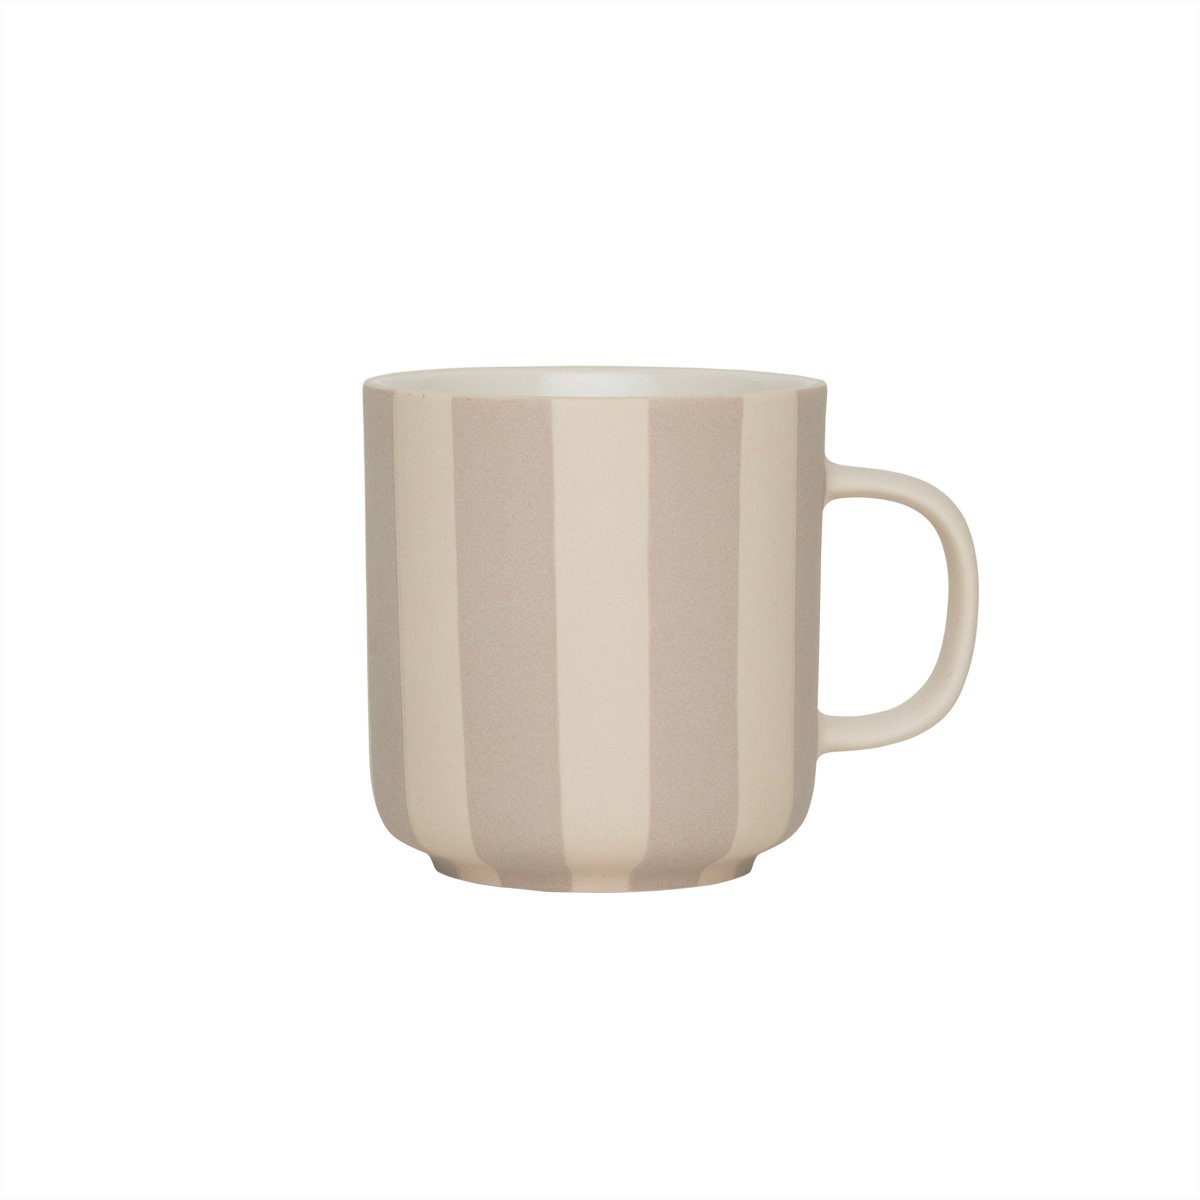 OYOY LIVING - Toppu Mug - Clay (L301191)